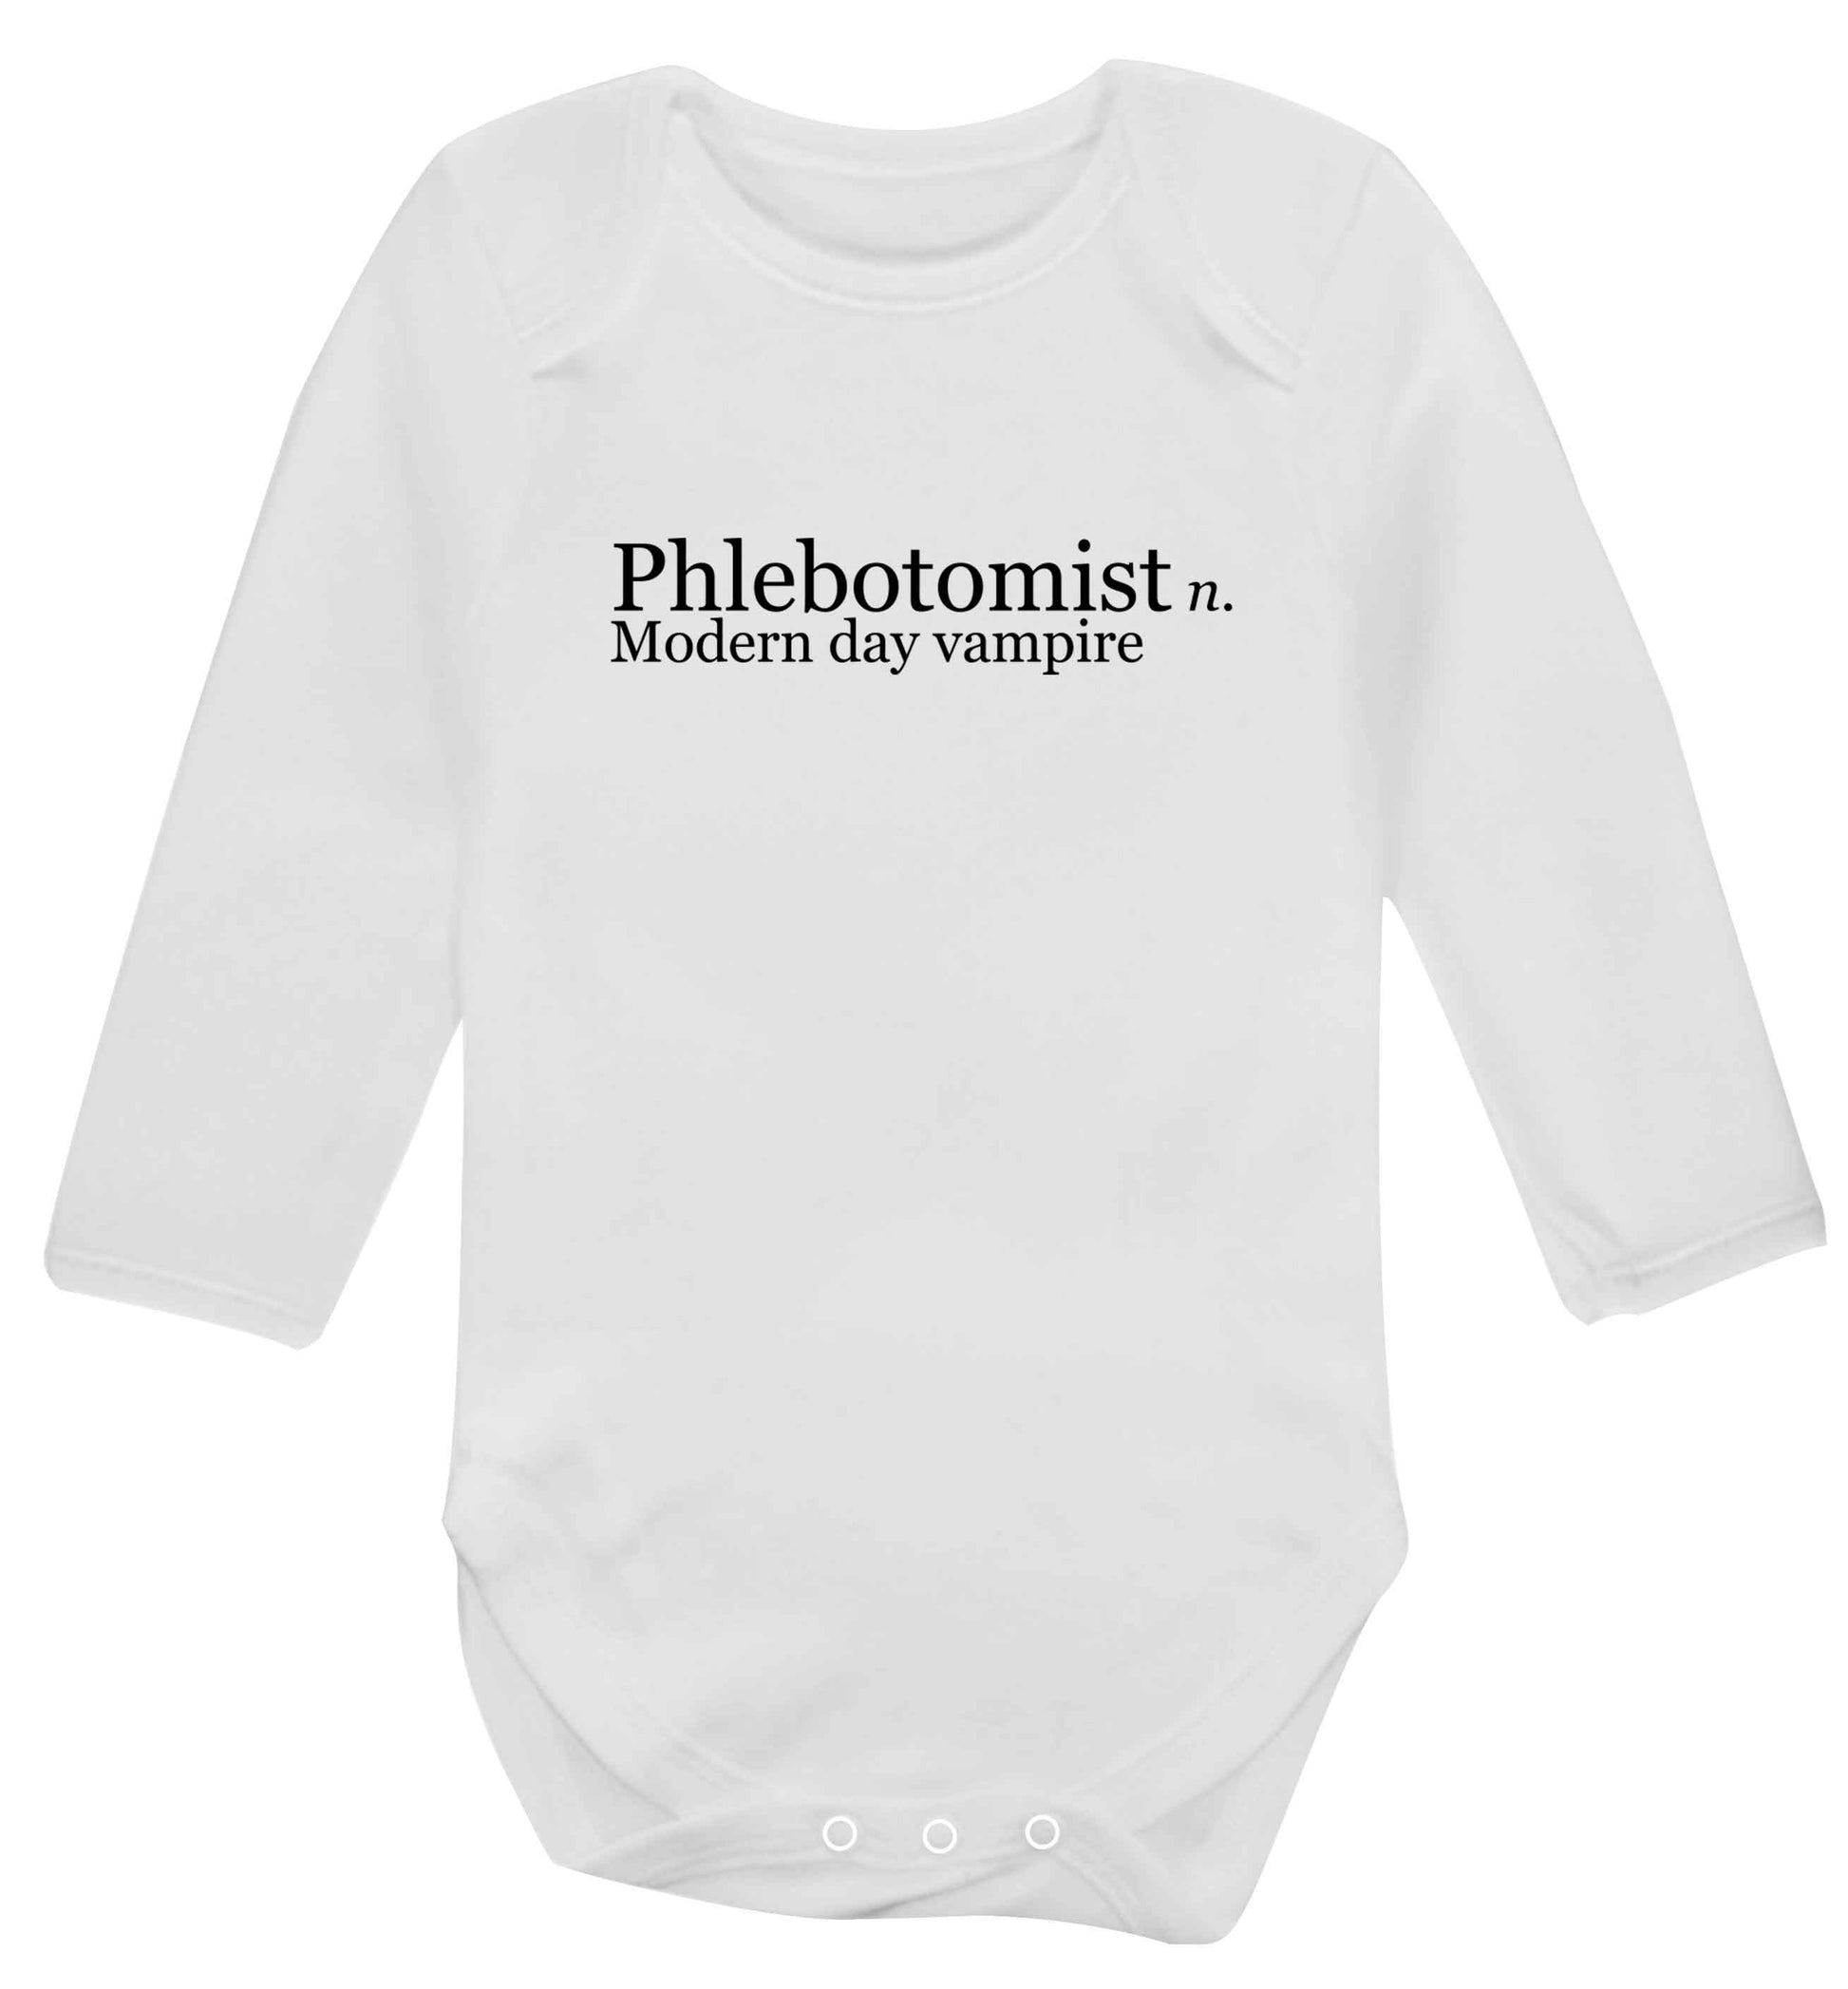 Phlebotomist - Modern day vampire baby vest long sleeved white 6-12 months